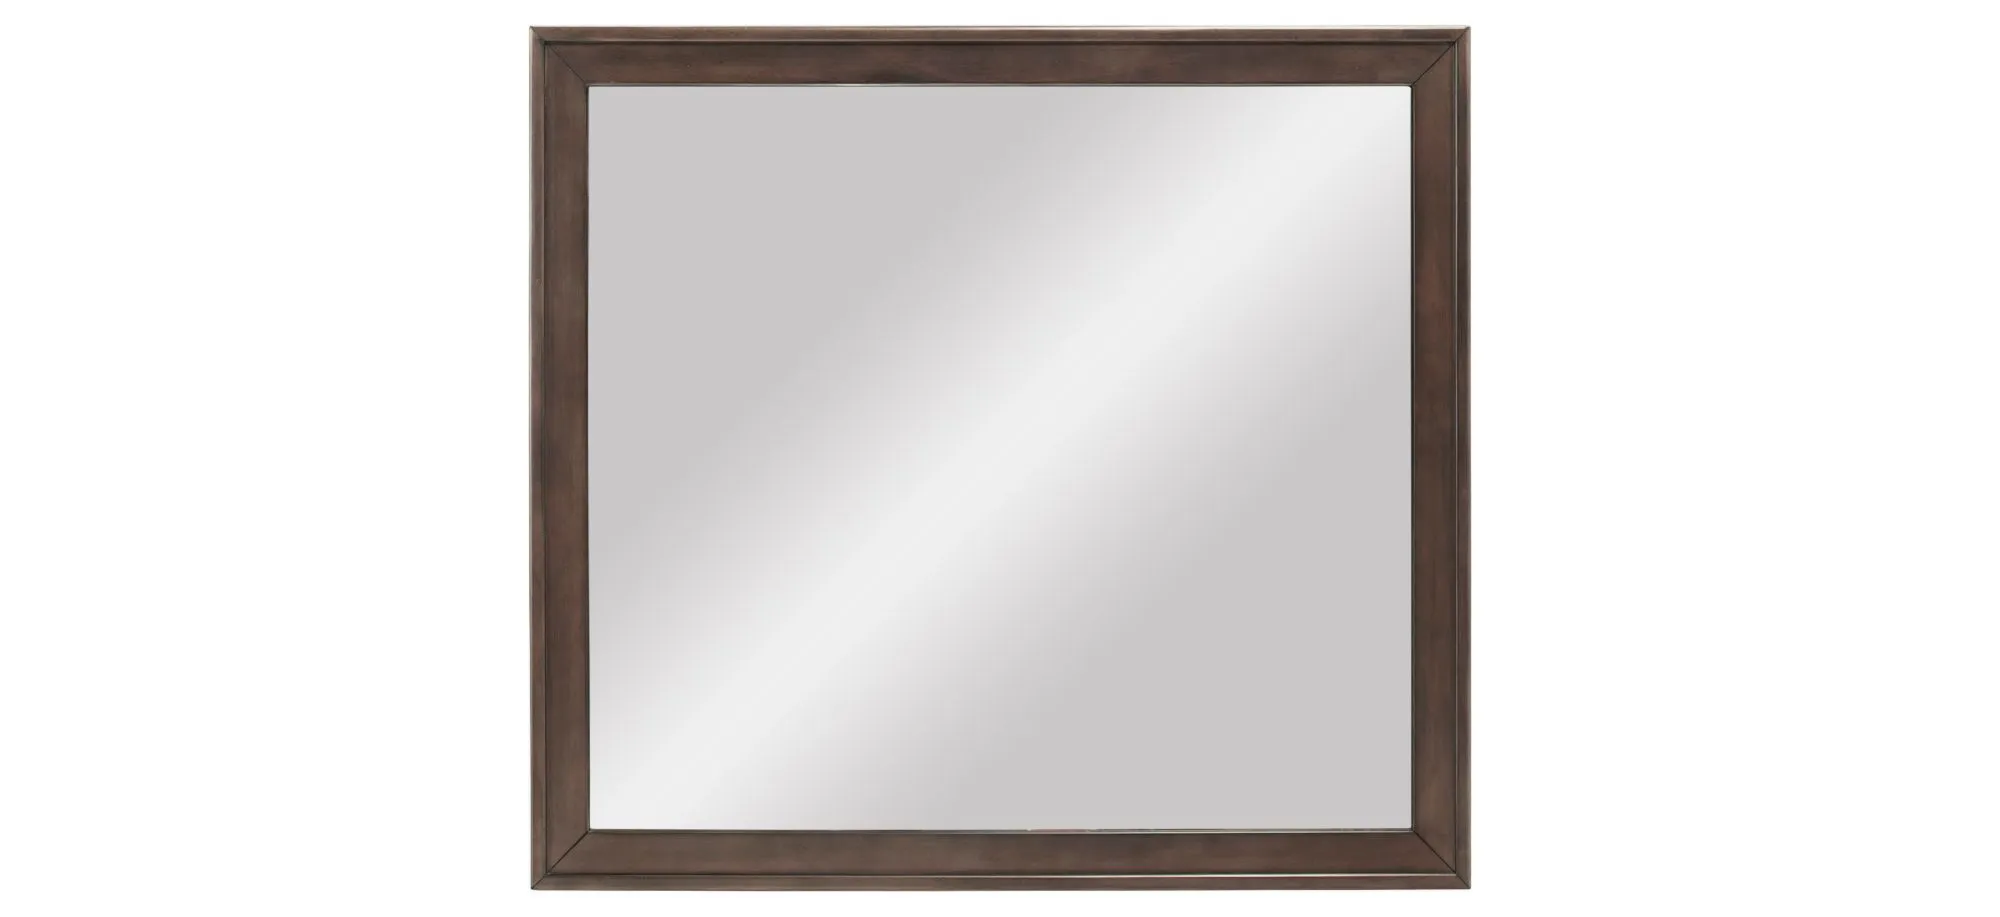 Kieran Bedroom Dresser Mirror in Driftwood Gray by Bellanest